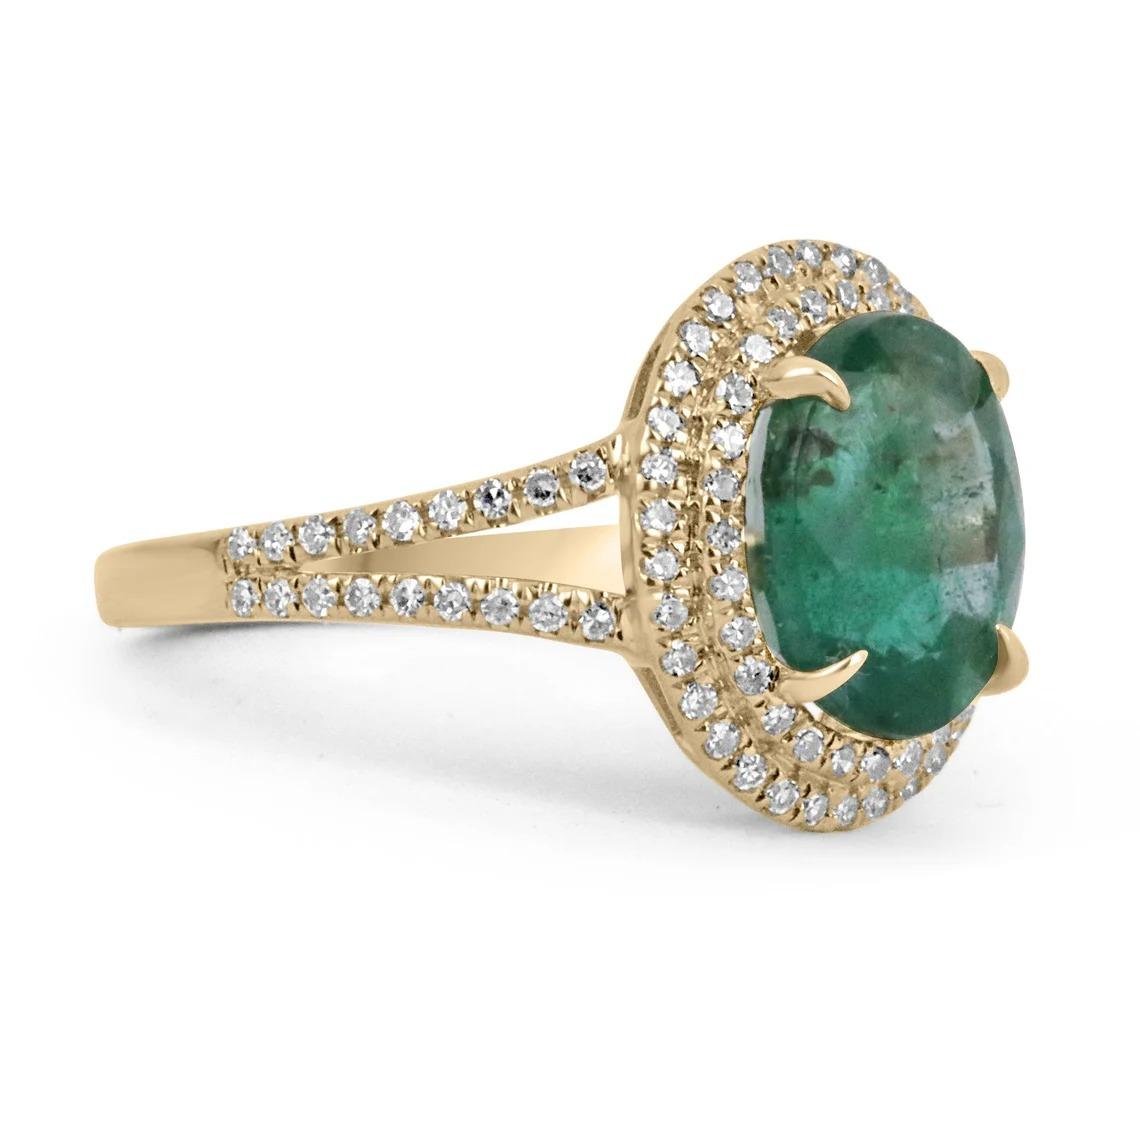 Hier ist ein atemberaubender Ring mit Smaragd und Diamanten zu sehen. Der zentrale Edelstein ist ein wunderschöner 3.80-karätiger, natürlicher Smaragd im Ovalschliff mit Ursprung in Sambia. Die Farbe ist ein wunderschönes und üppiges Dunkelgrün mit